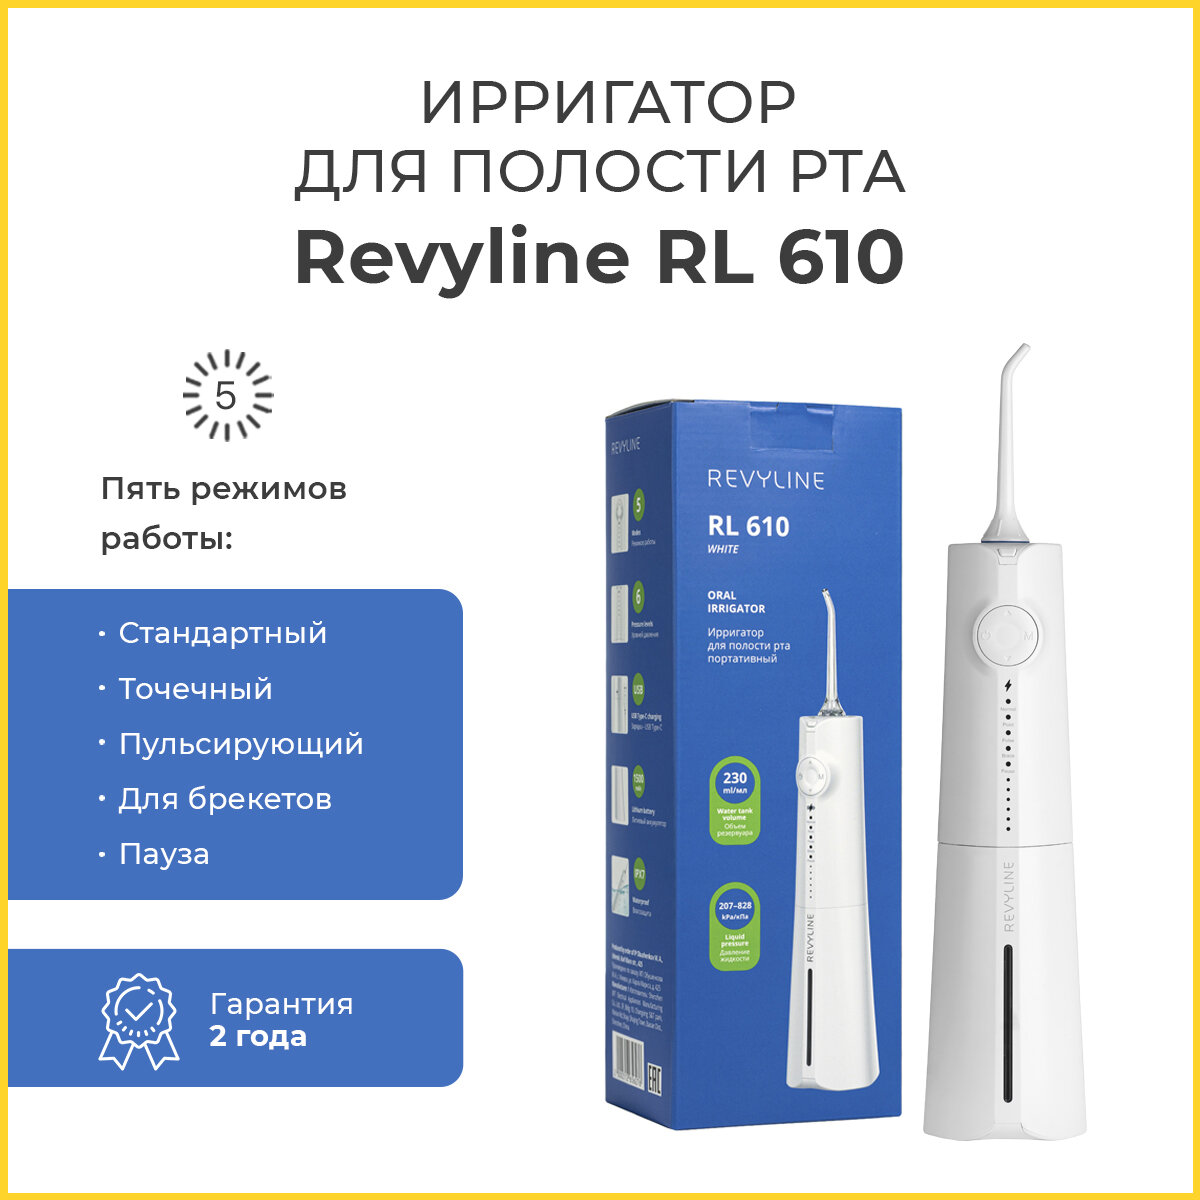 Ирригатор для полости рта Revyline RL 610, белый, портативный, Ревилайн